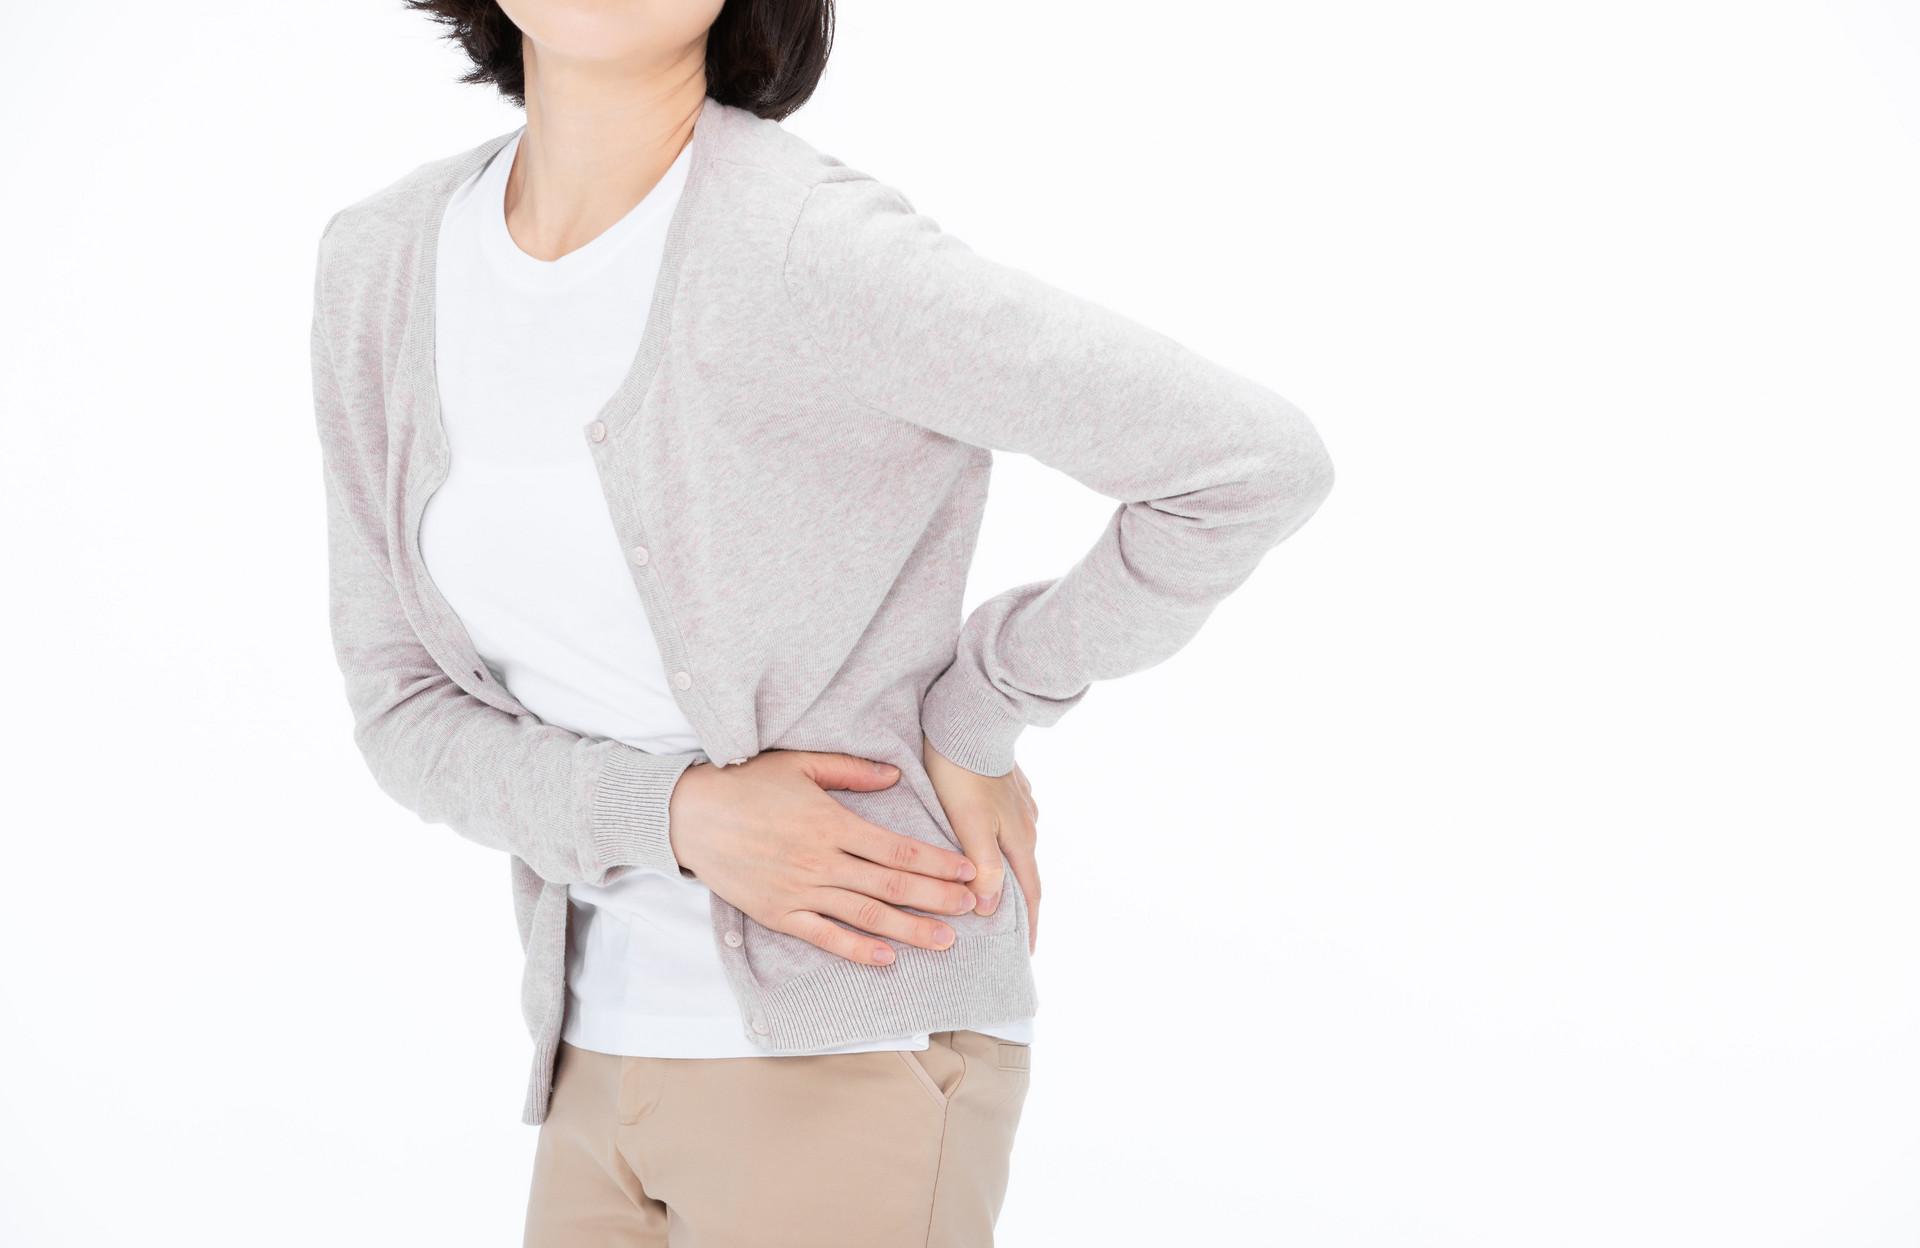 顺产和剖腹产哪个产后不腰疼 产后腰疼的原因有哪些